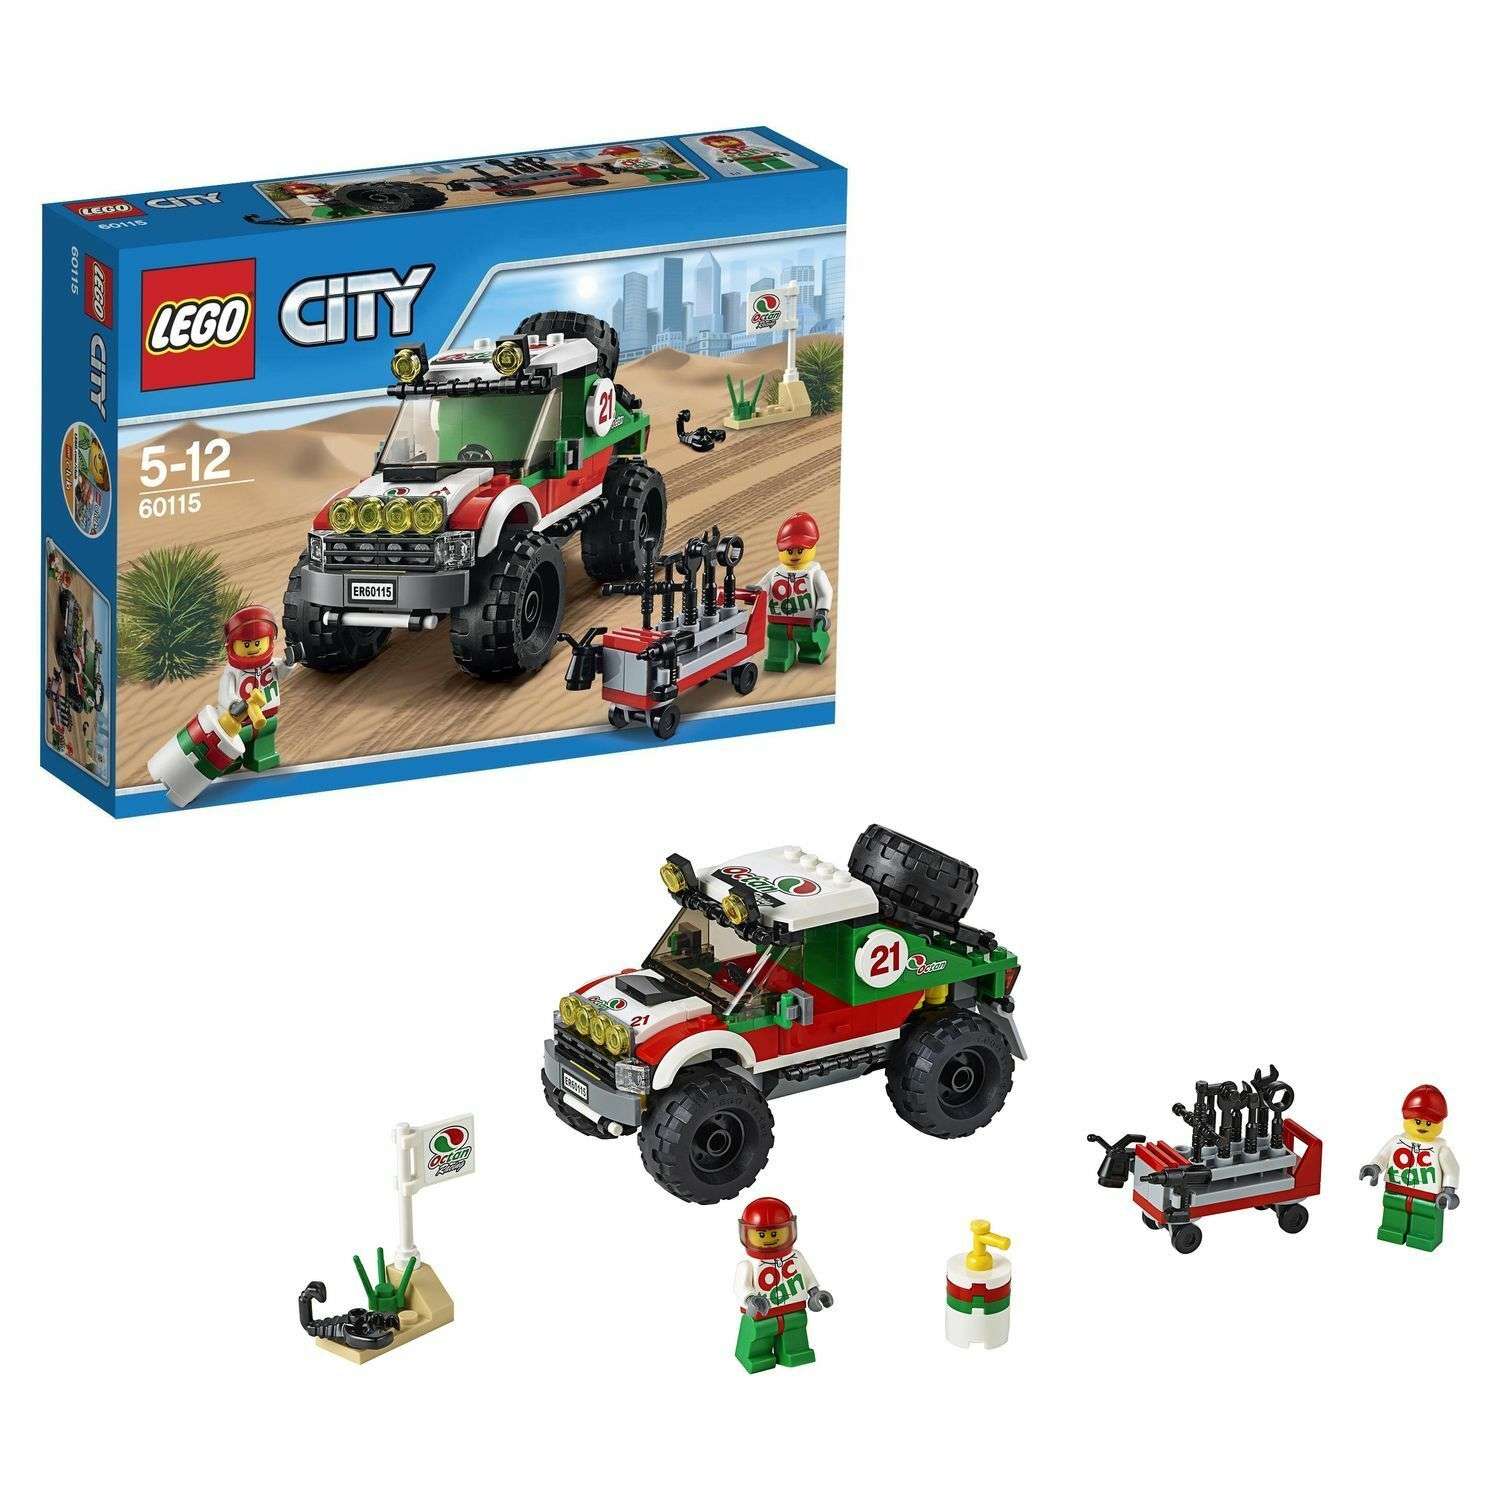 Конструктор LEGO City Great Vehicles Внедорожник 4x4 (60115) - фото 1